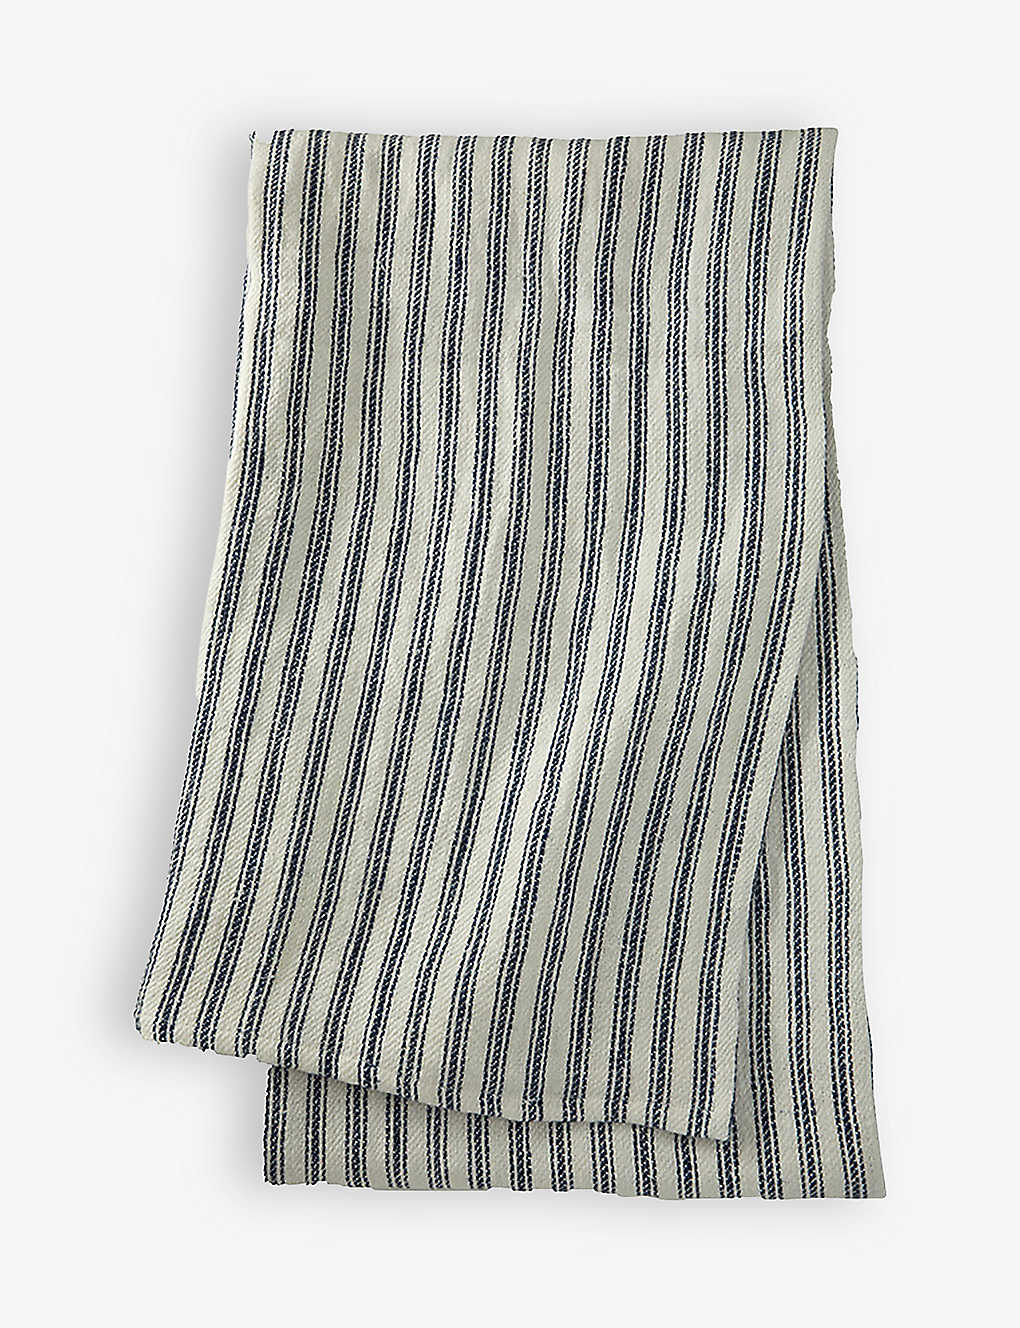 Ralph Lauren Home Indigo Carrell Stripe-pattern Linen Throw